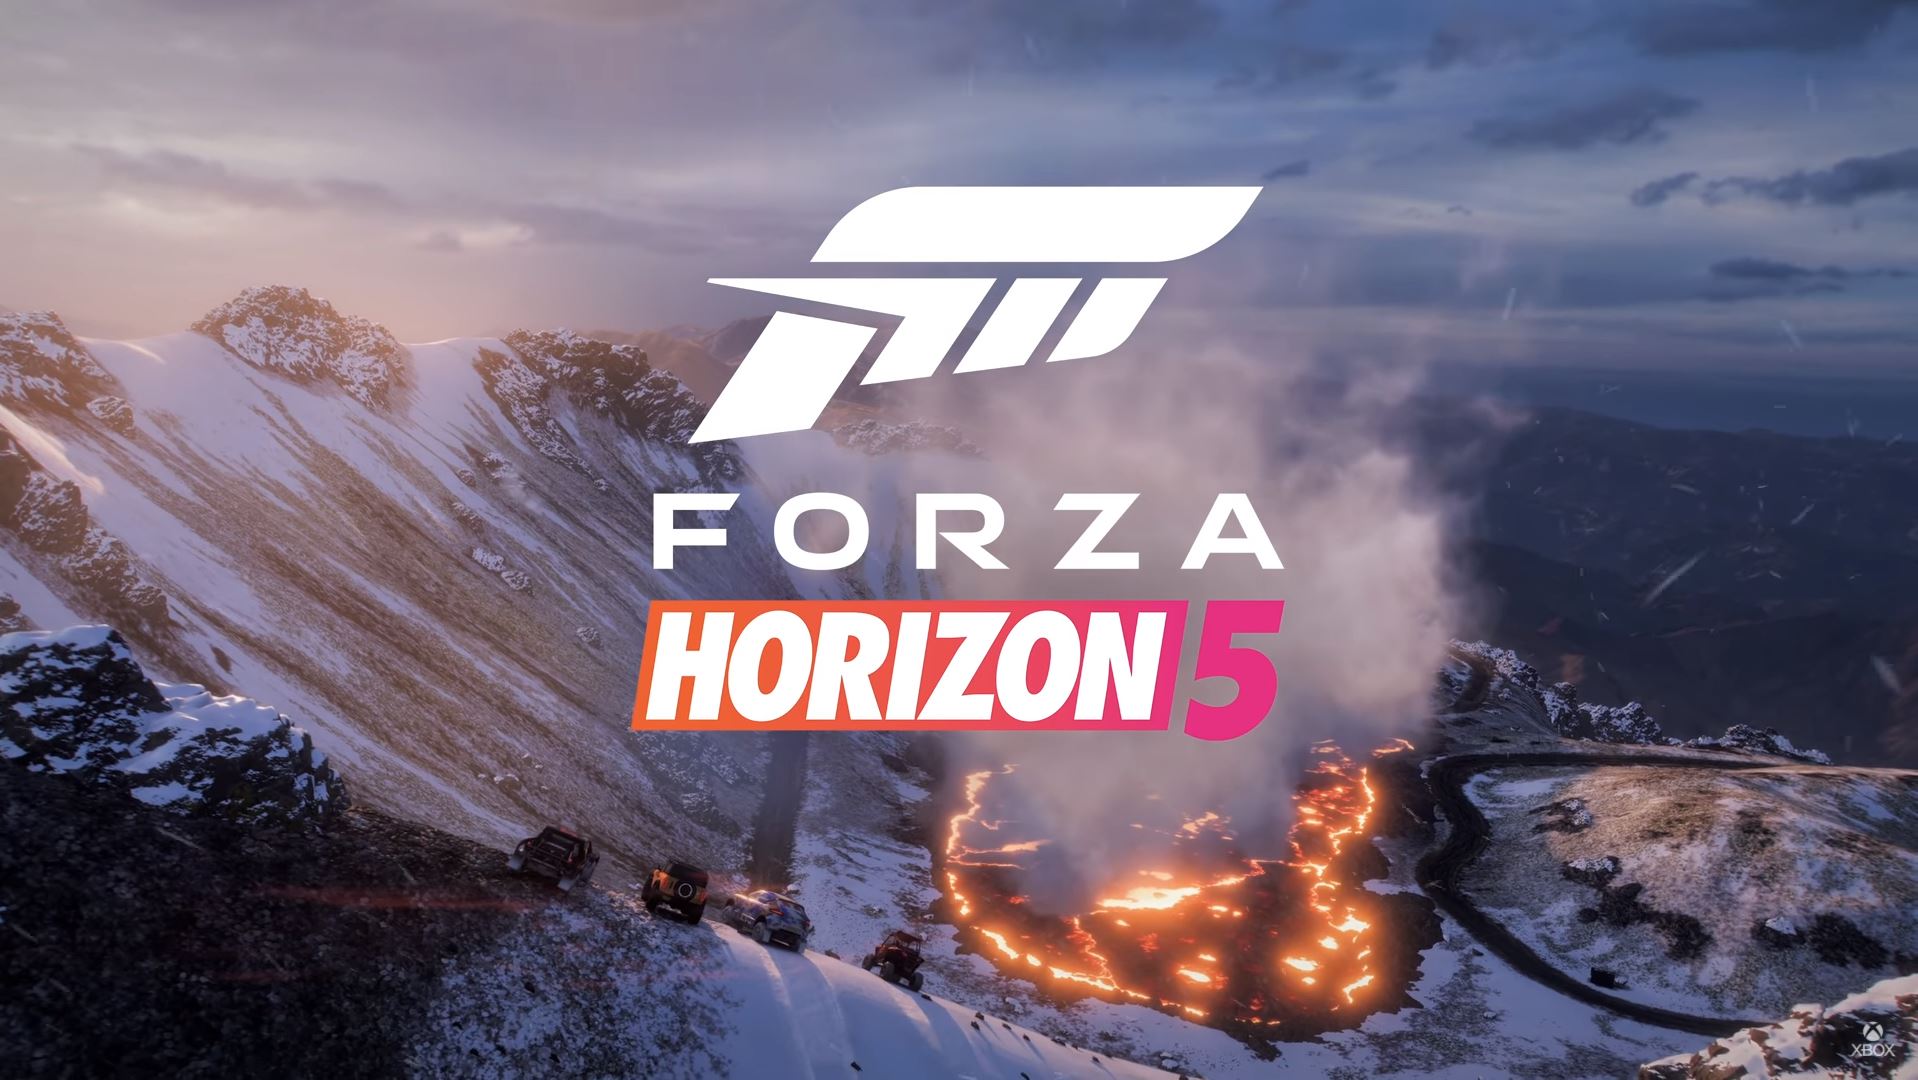 เปิดตัว Forza Horizon 5 ภาคใหม่ของซีรีส์เกมแข่งรถภาพสวยแห่งปี พร้อมวางจำหน่าย 9 พฤศจิกายนนี้